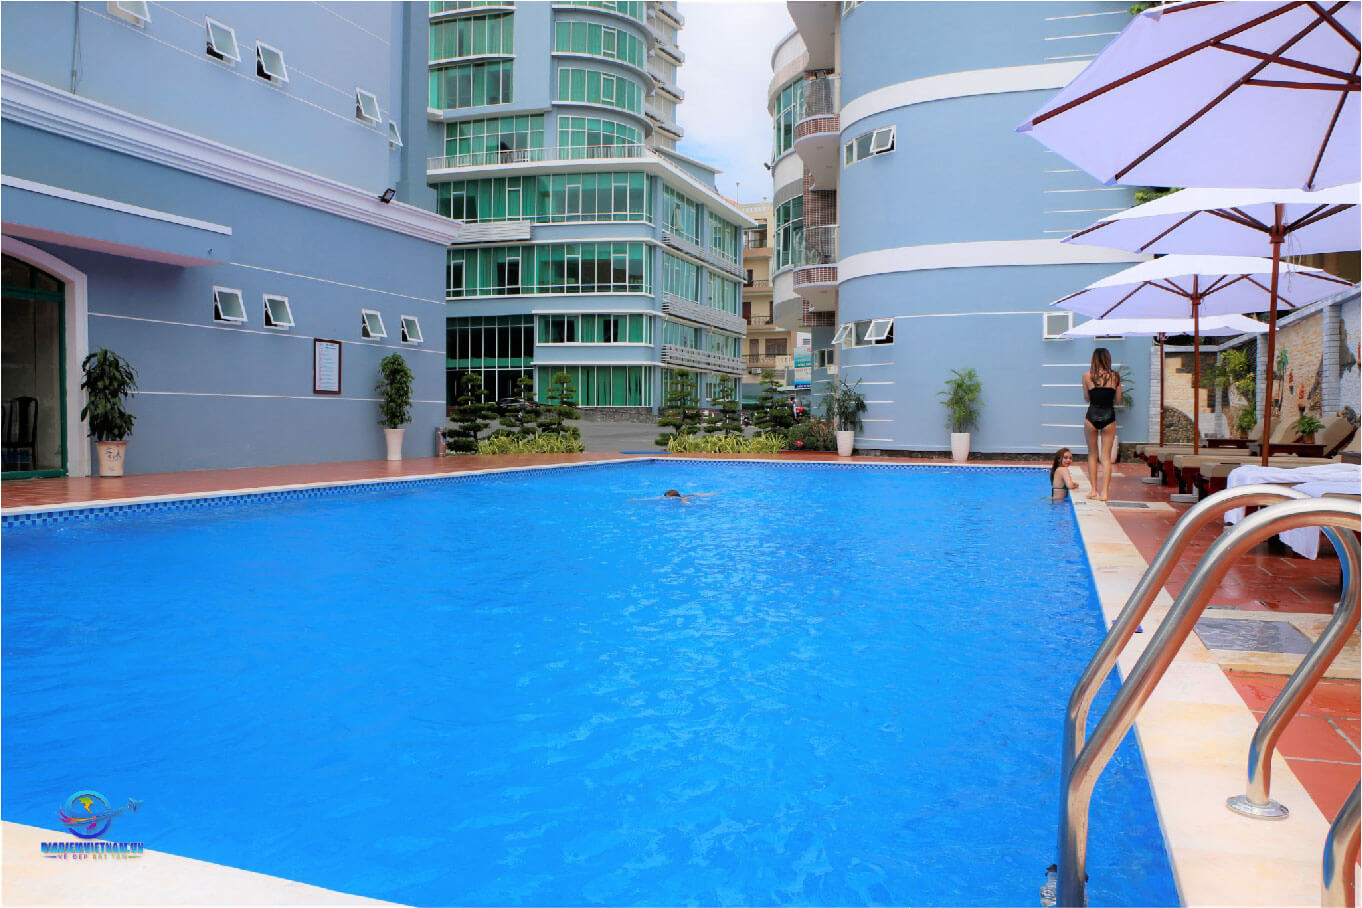 Bể bơi tại khách sạn Ninh Kiều Riverside Cần Thơ